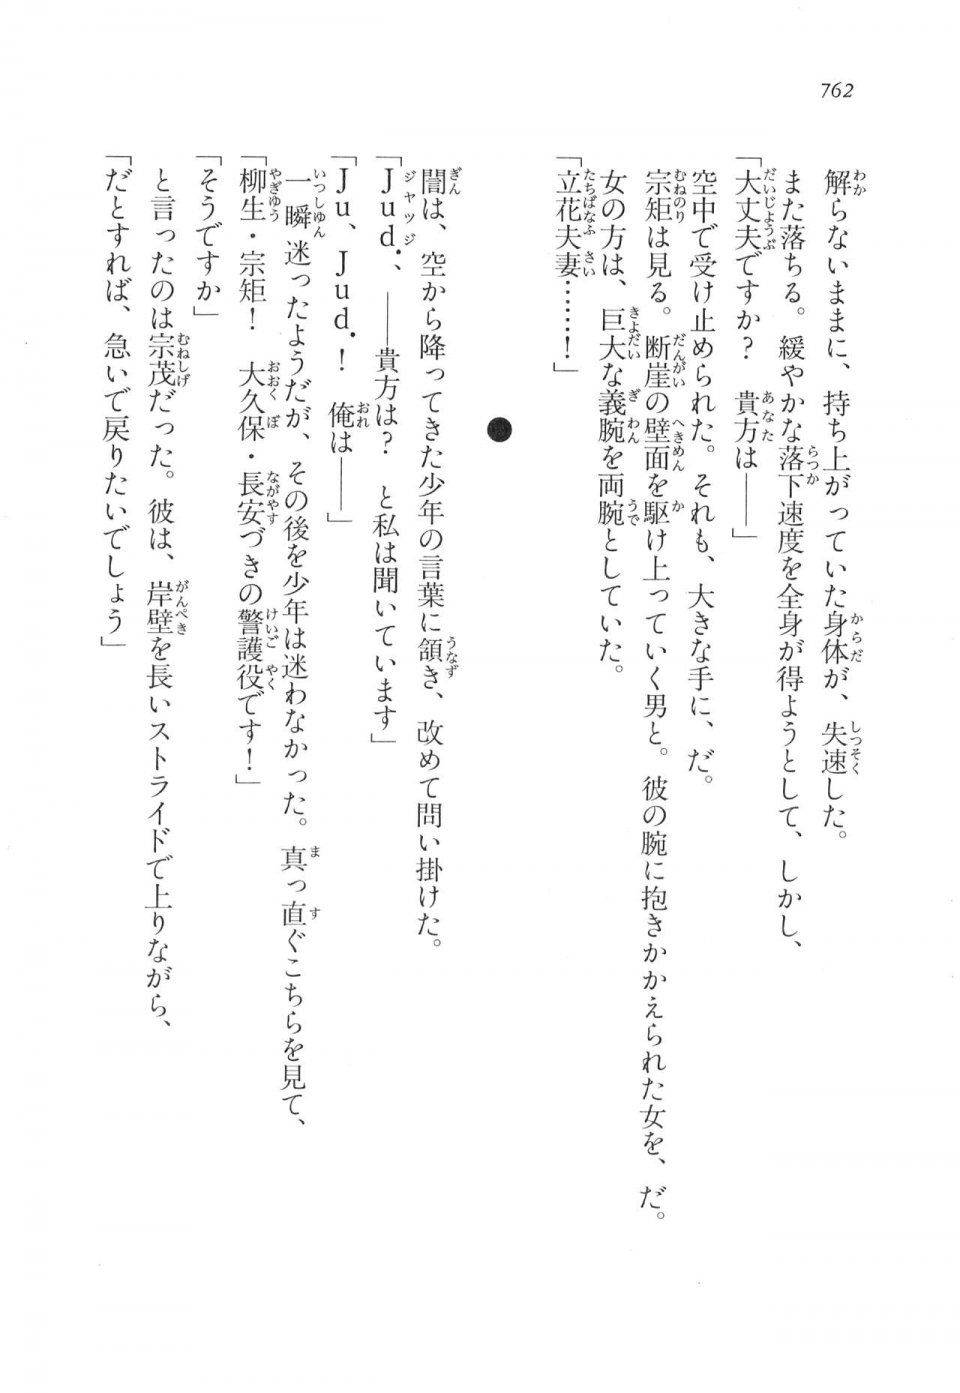 Kyoukai Senjou no Horizon LN Vol 17(7B) - Photo #764